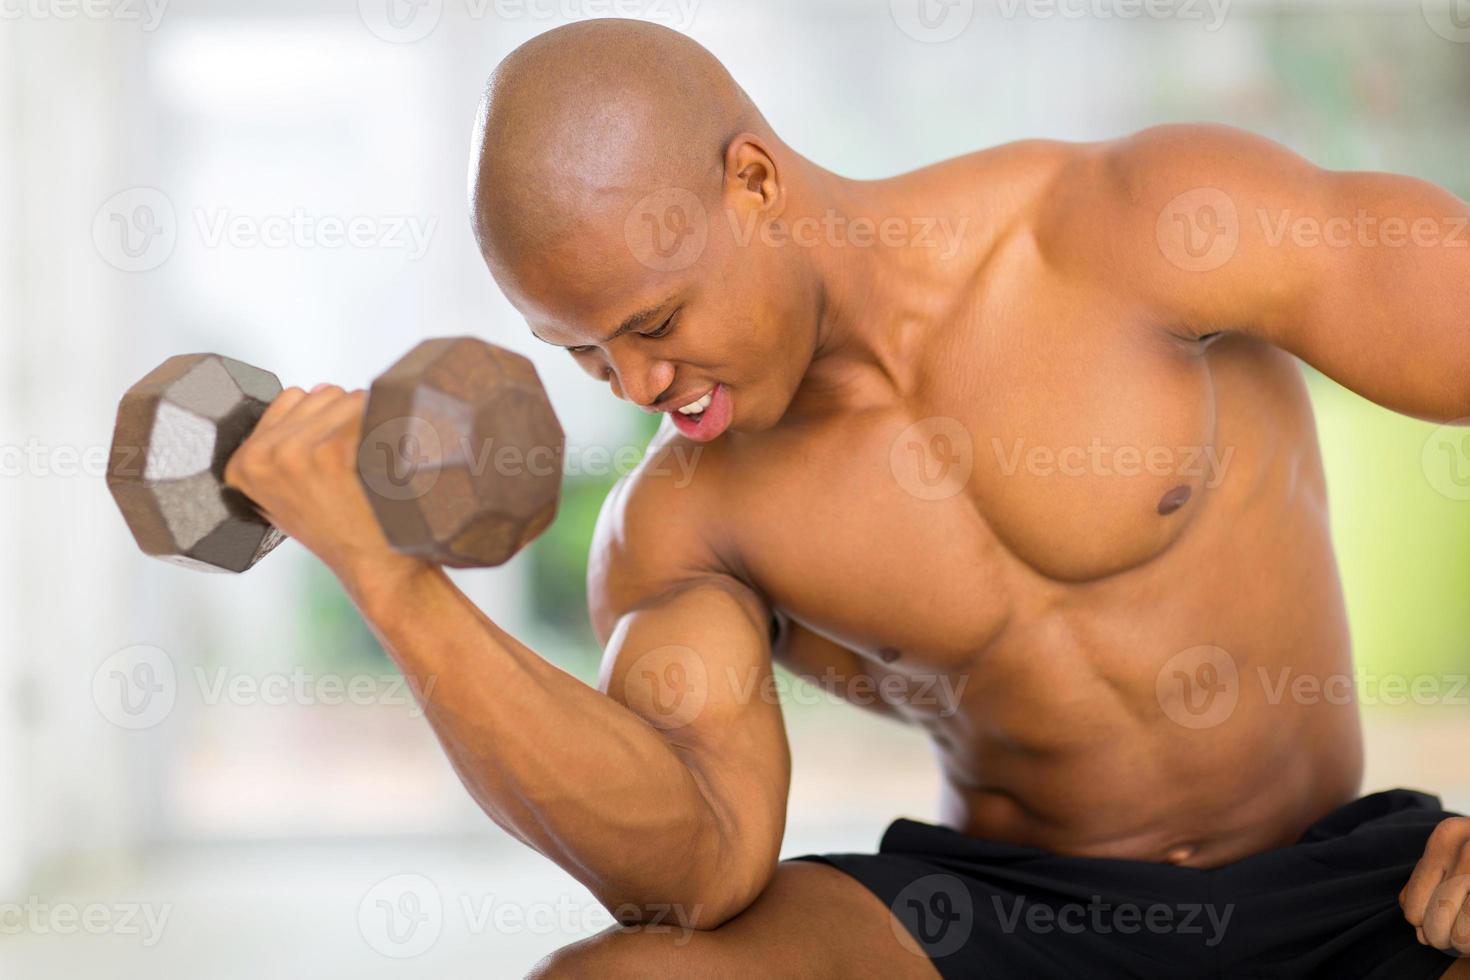 fisiculturista muscular afro-americana foto